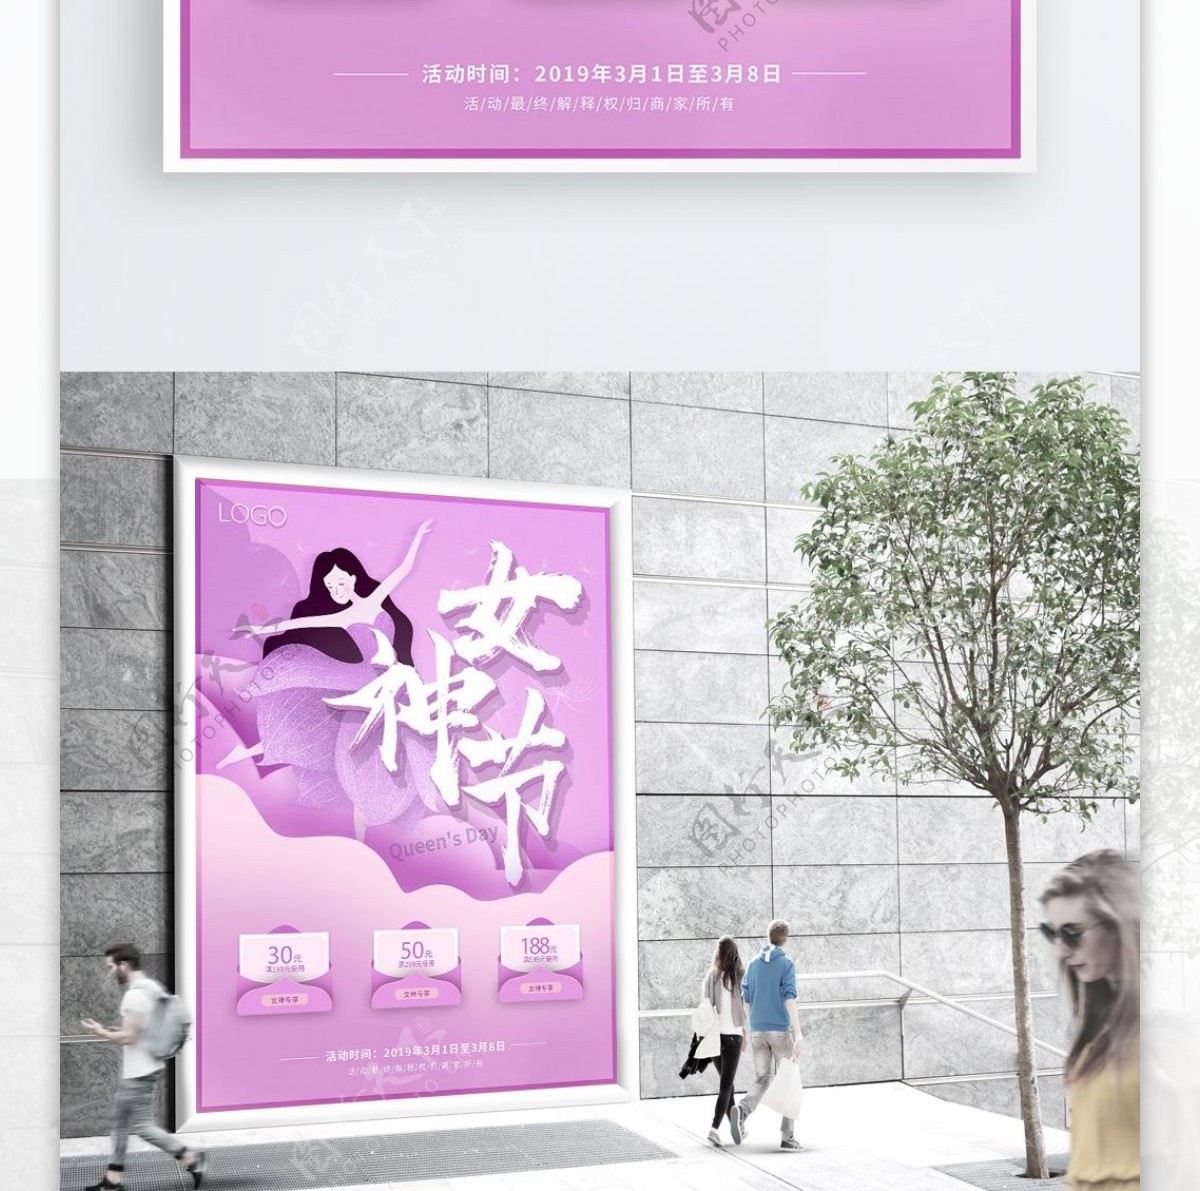 女神节三八女王节促销活动妇女节海报